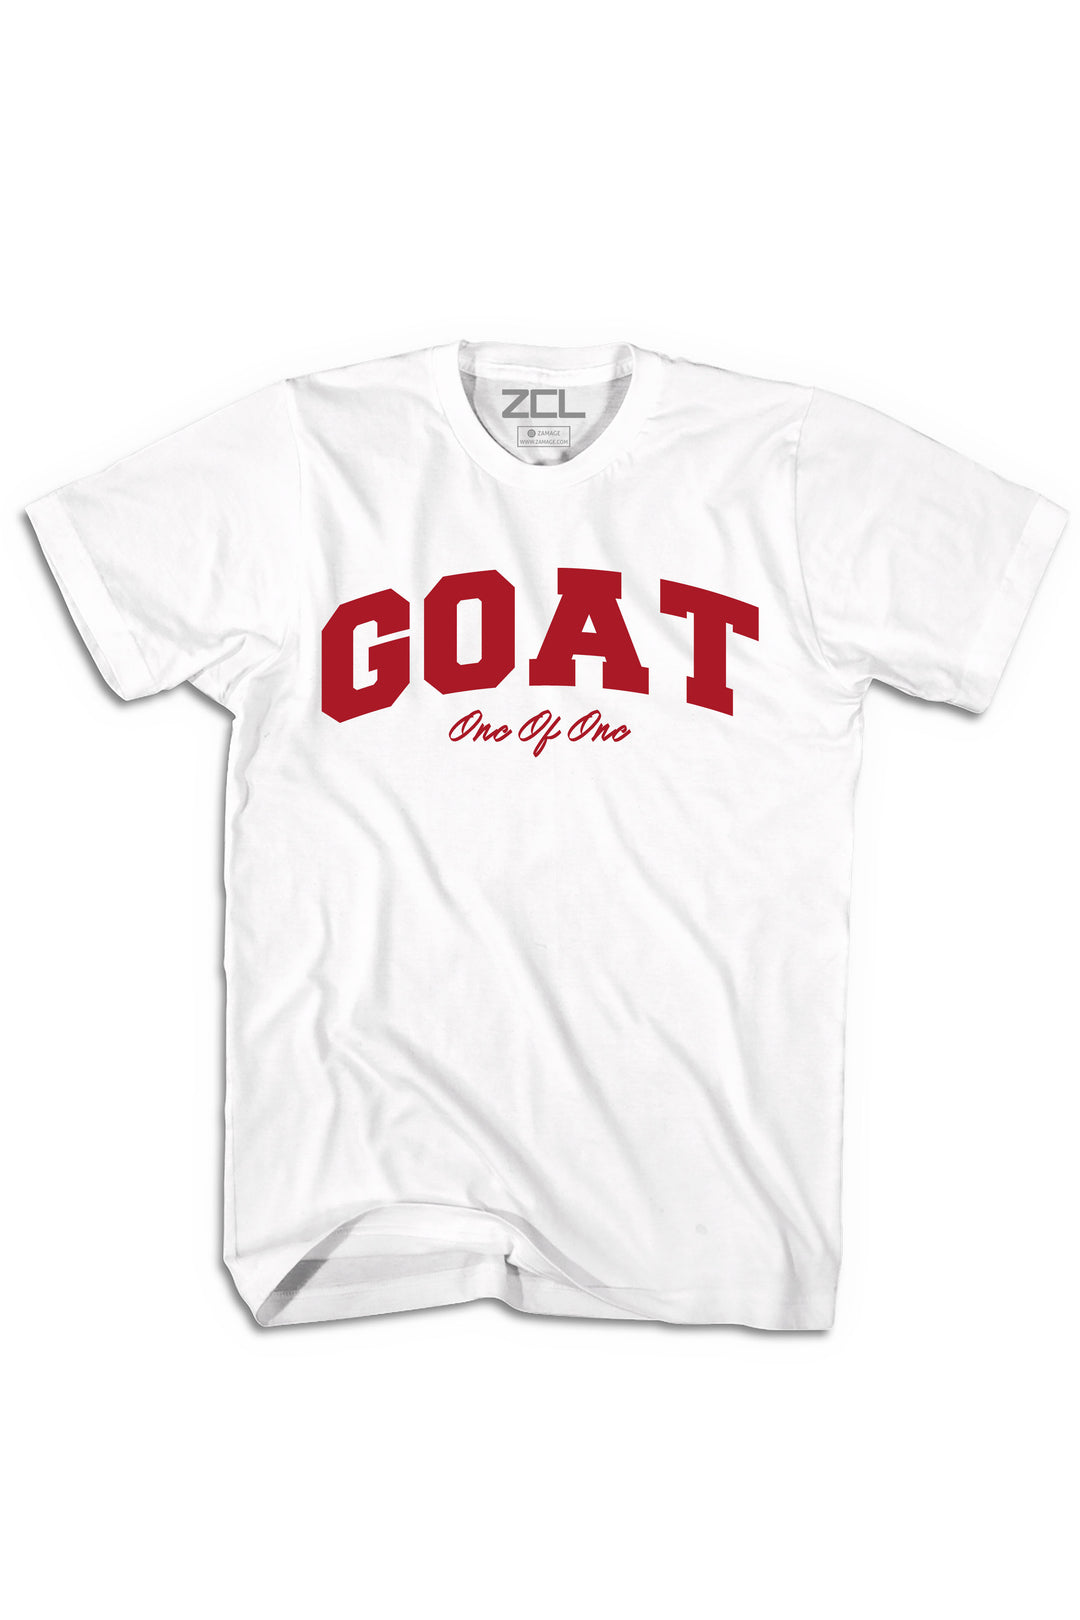 Goat Tee (Red Logo) - Zamage